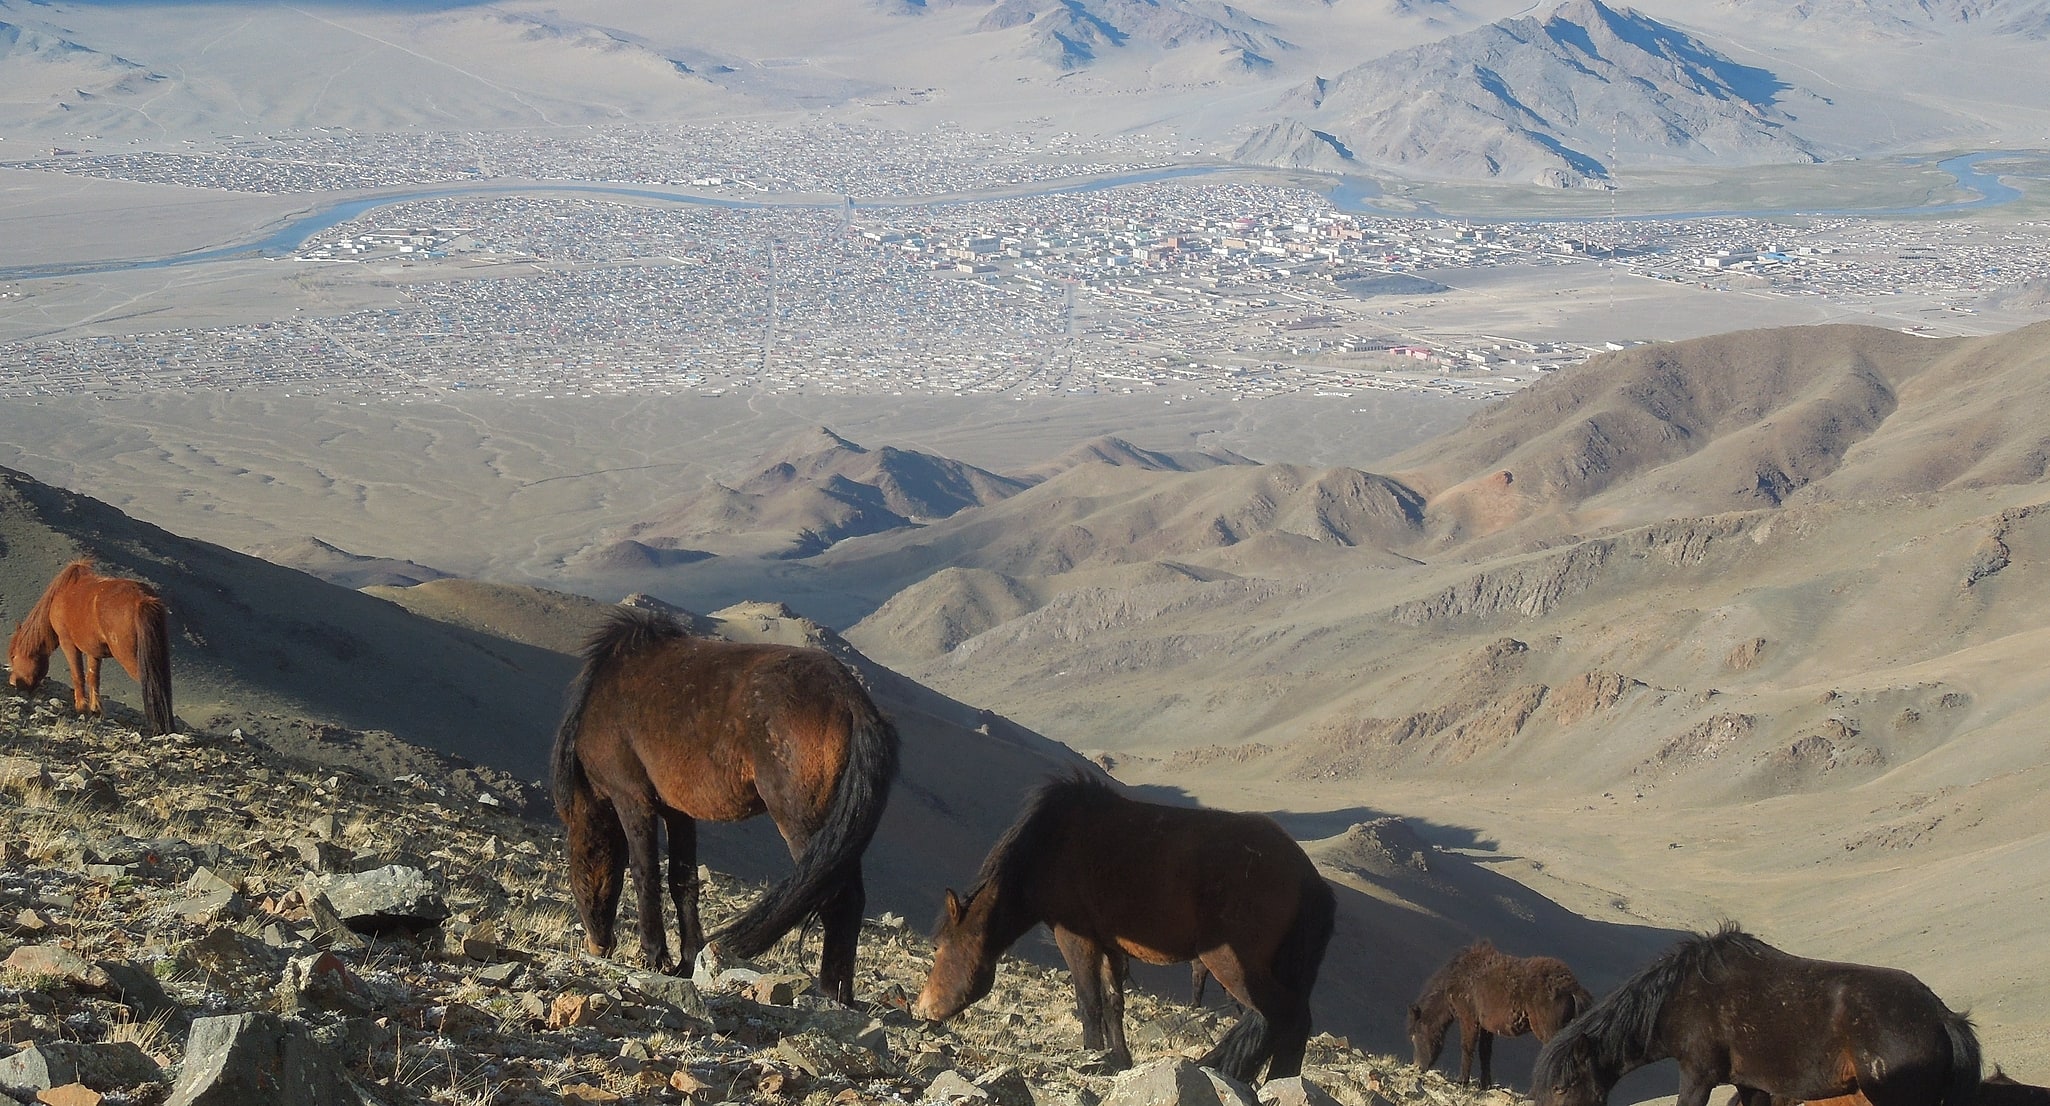 Ölgii, Mongolia